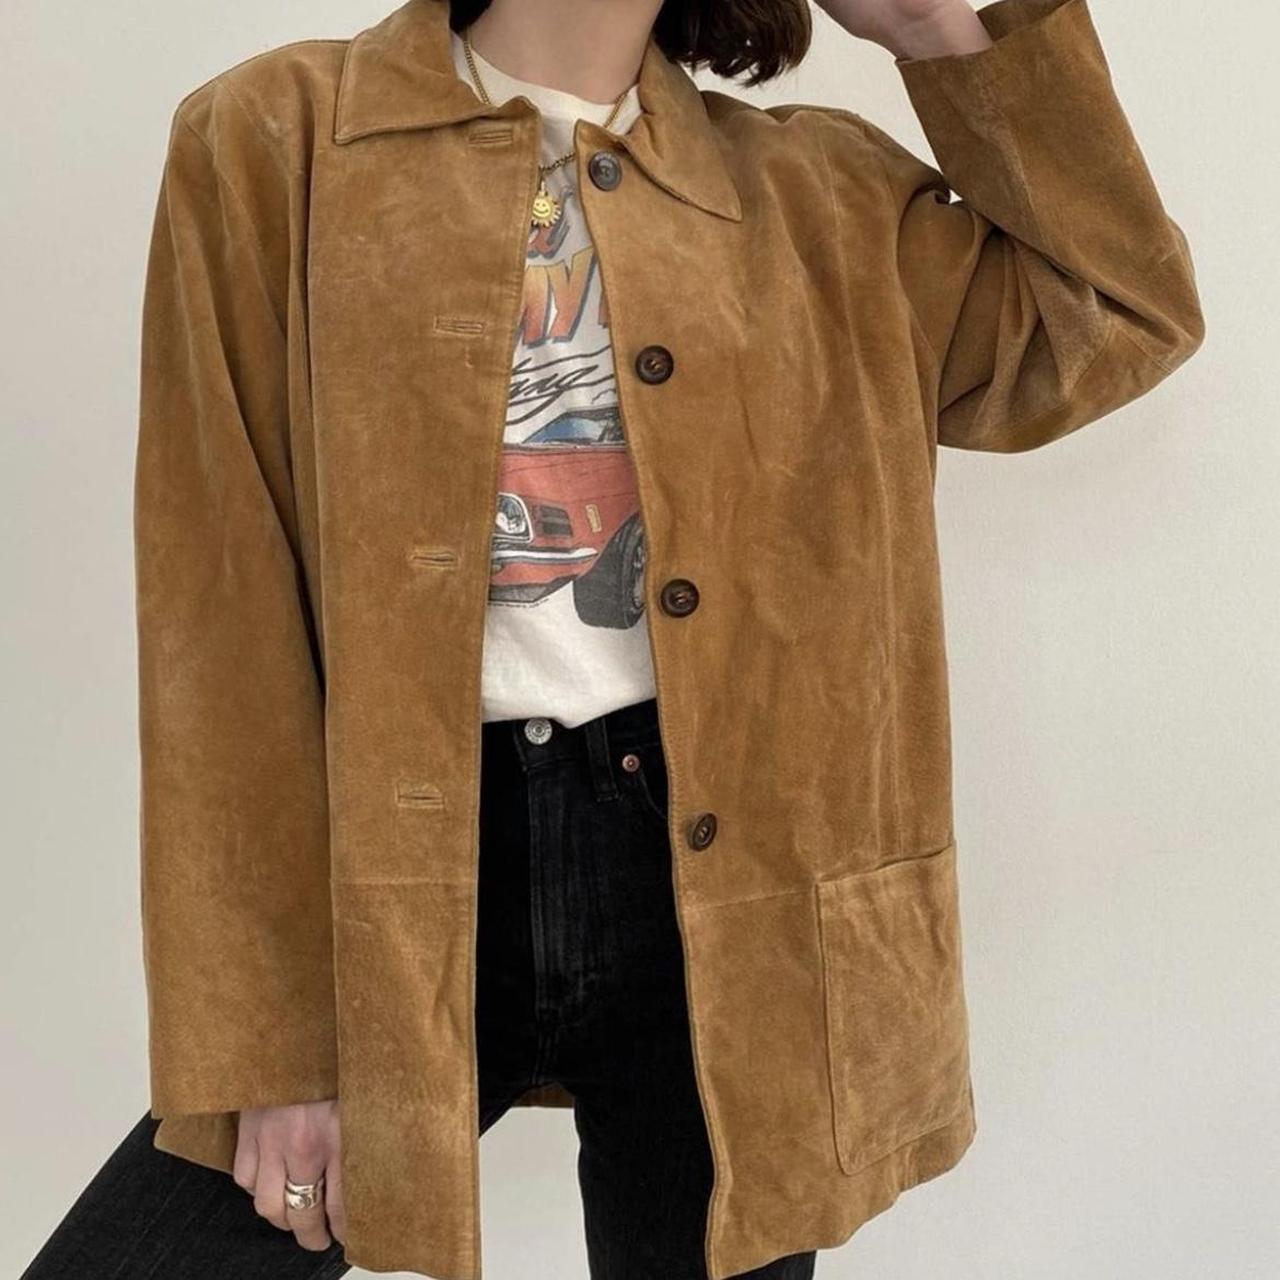 90s Vintage Oversized Suede Leather Shirt Jacket Tan... - Depop